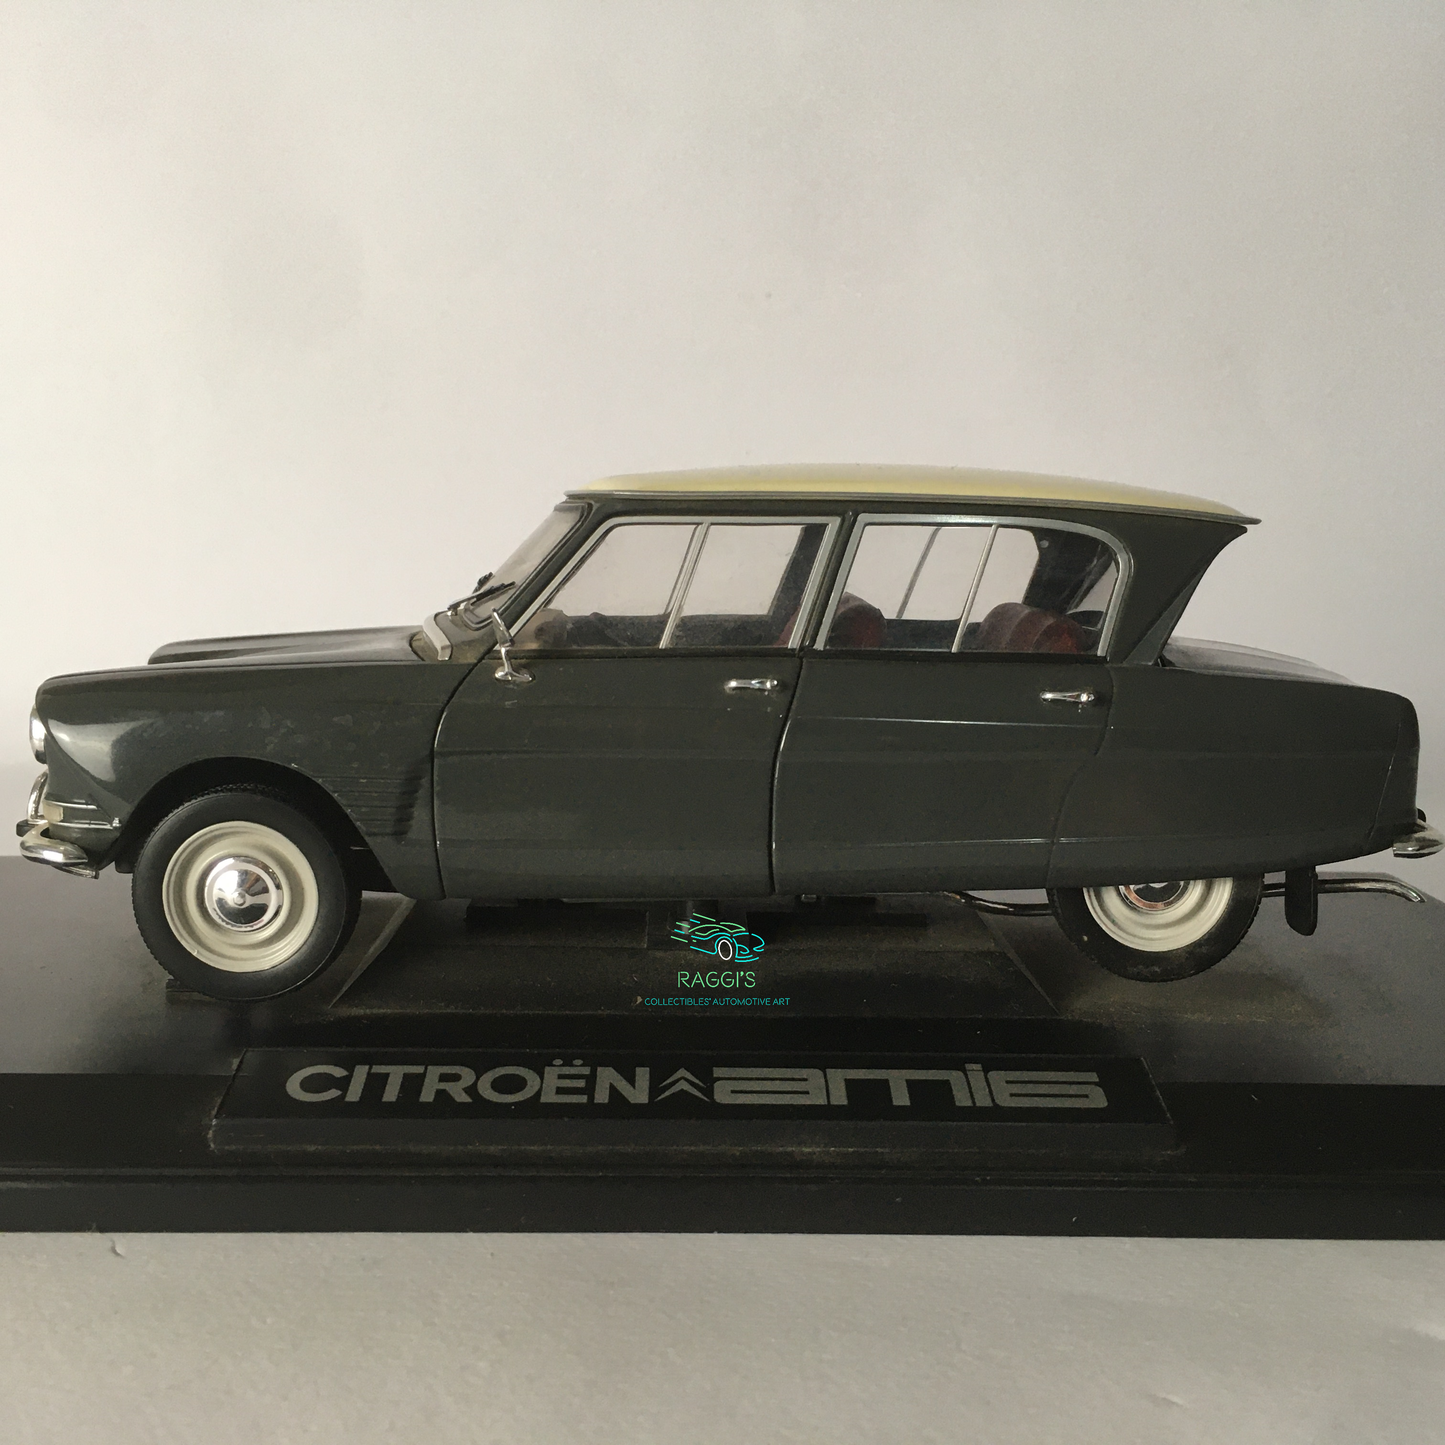 Citroën, Modellino in Metallo Pressofuso Norev Citroën Ami 6 Scala 1:18